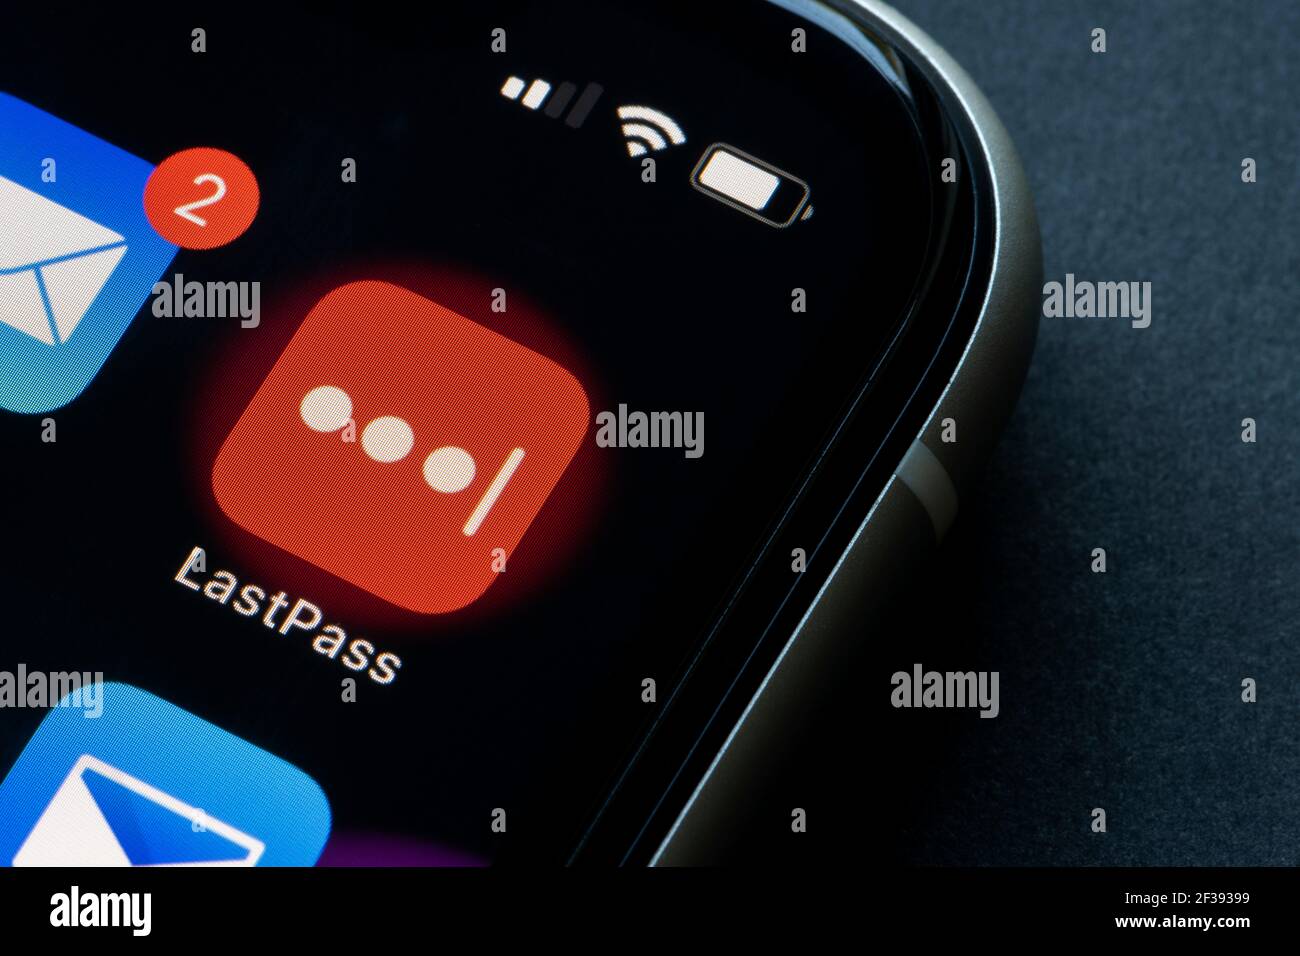 L'icône de l'application mobile LastPass s'affiche sur un iPhone le 12 mars 2021. LastPass est un gestionnaire de mots de passe freemium qui stocke les mots de passe cryptés en ligne. Banque D'Images